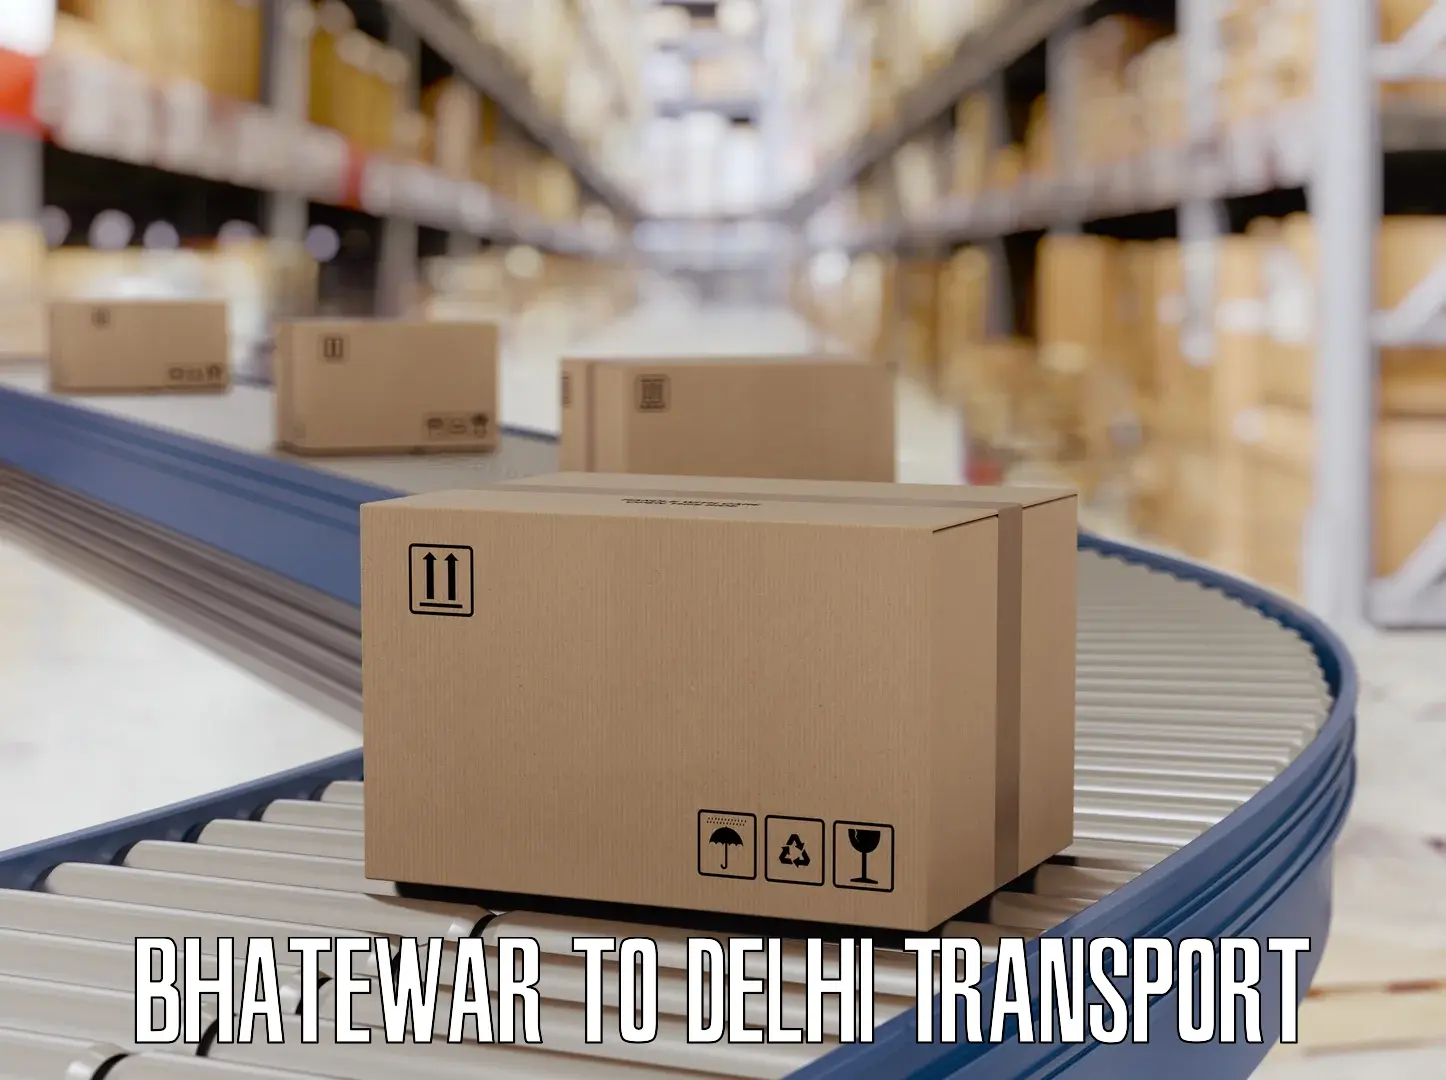 Two wheeler parcel service Bhatewar to Delhi